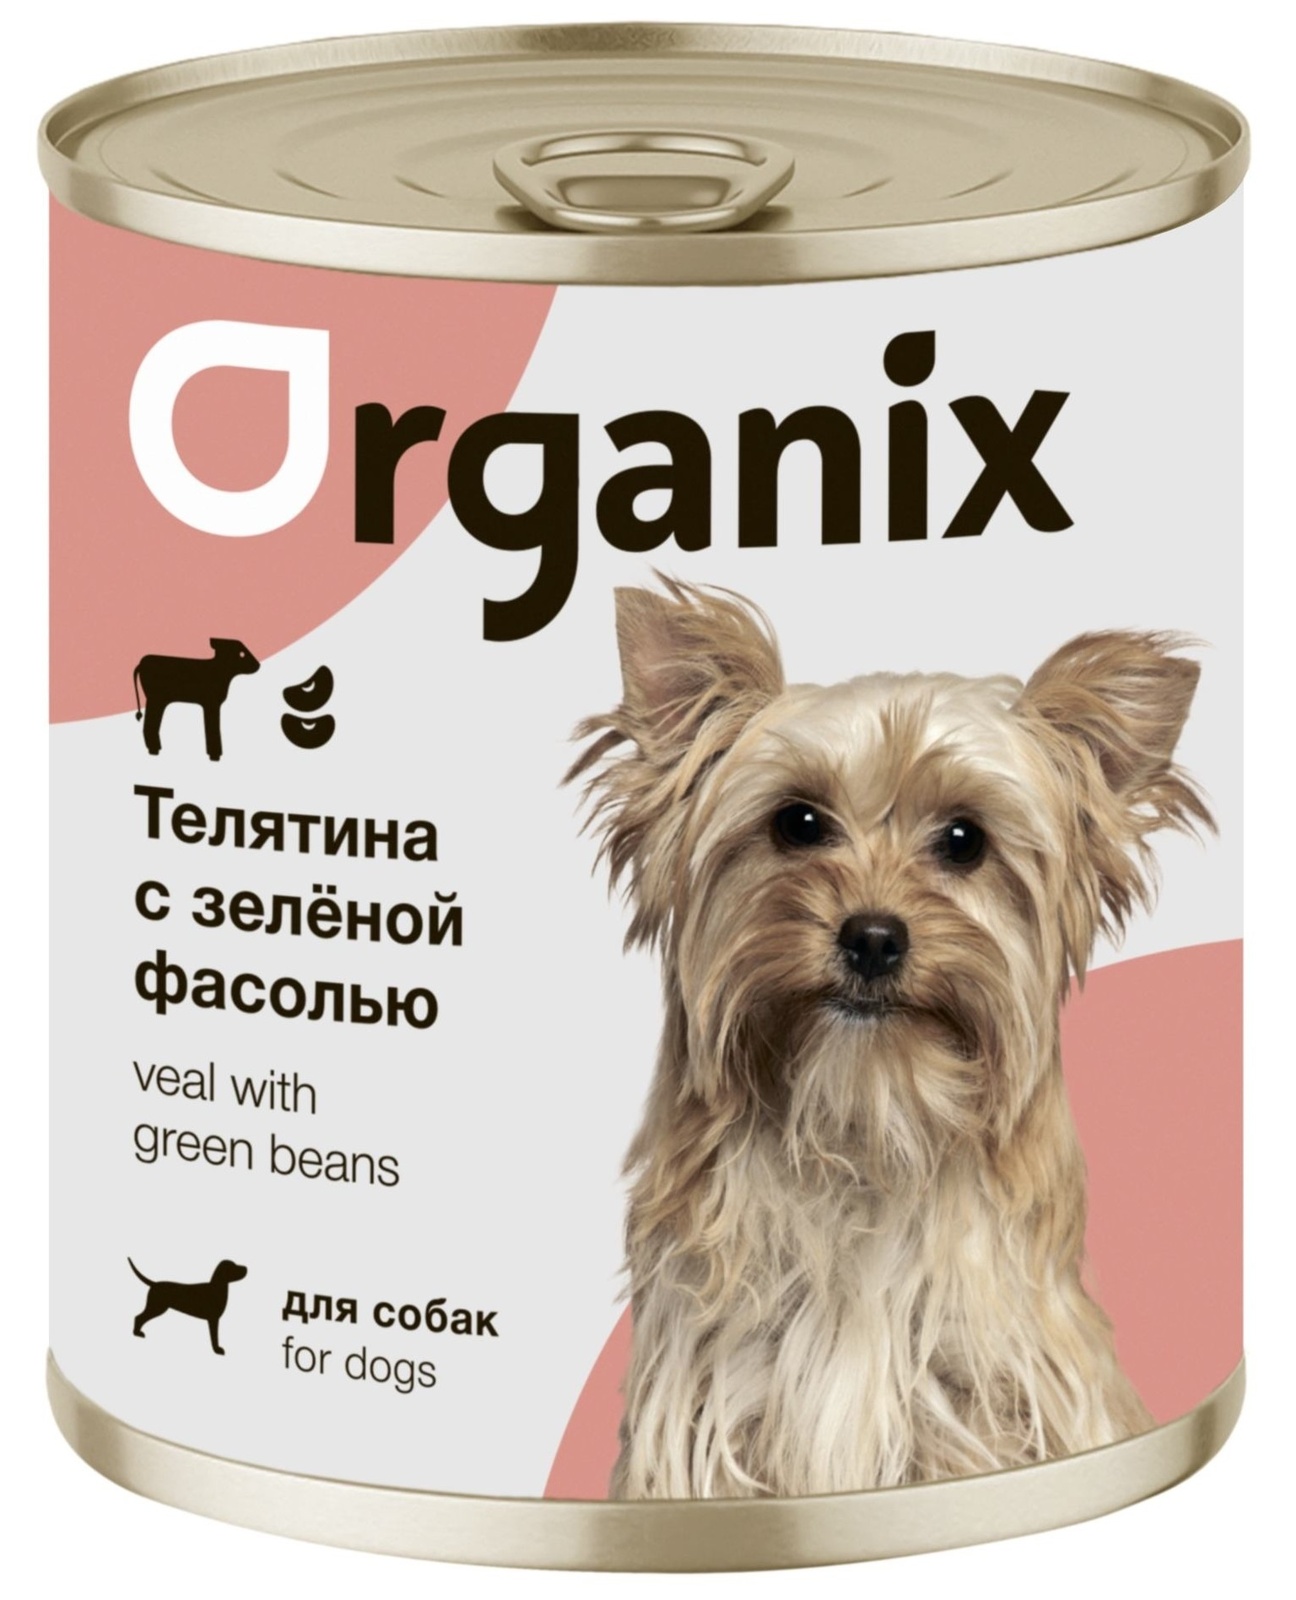 Organix консервы Organix консервы для собак Телятина с зеленой фасолью (100 г) organix консервы organix консервы для собак утка индейка картофель 100 г